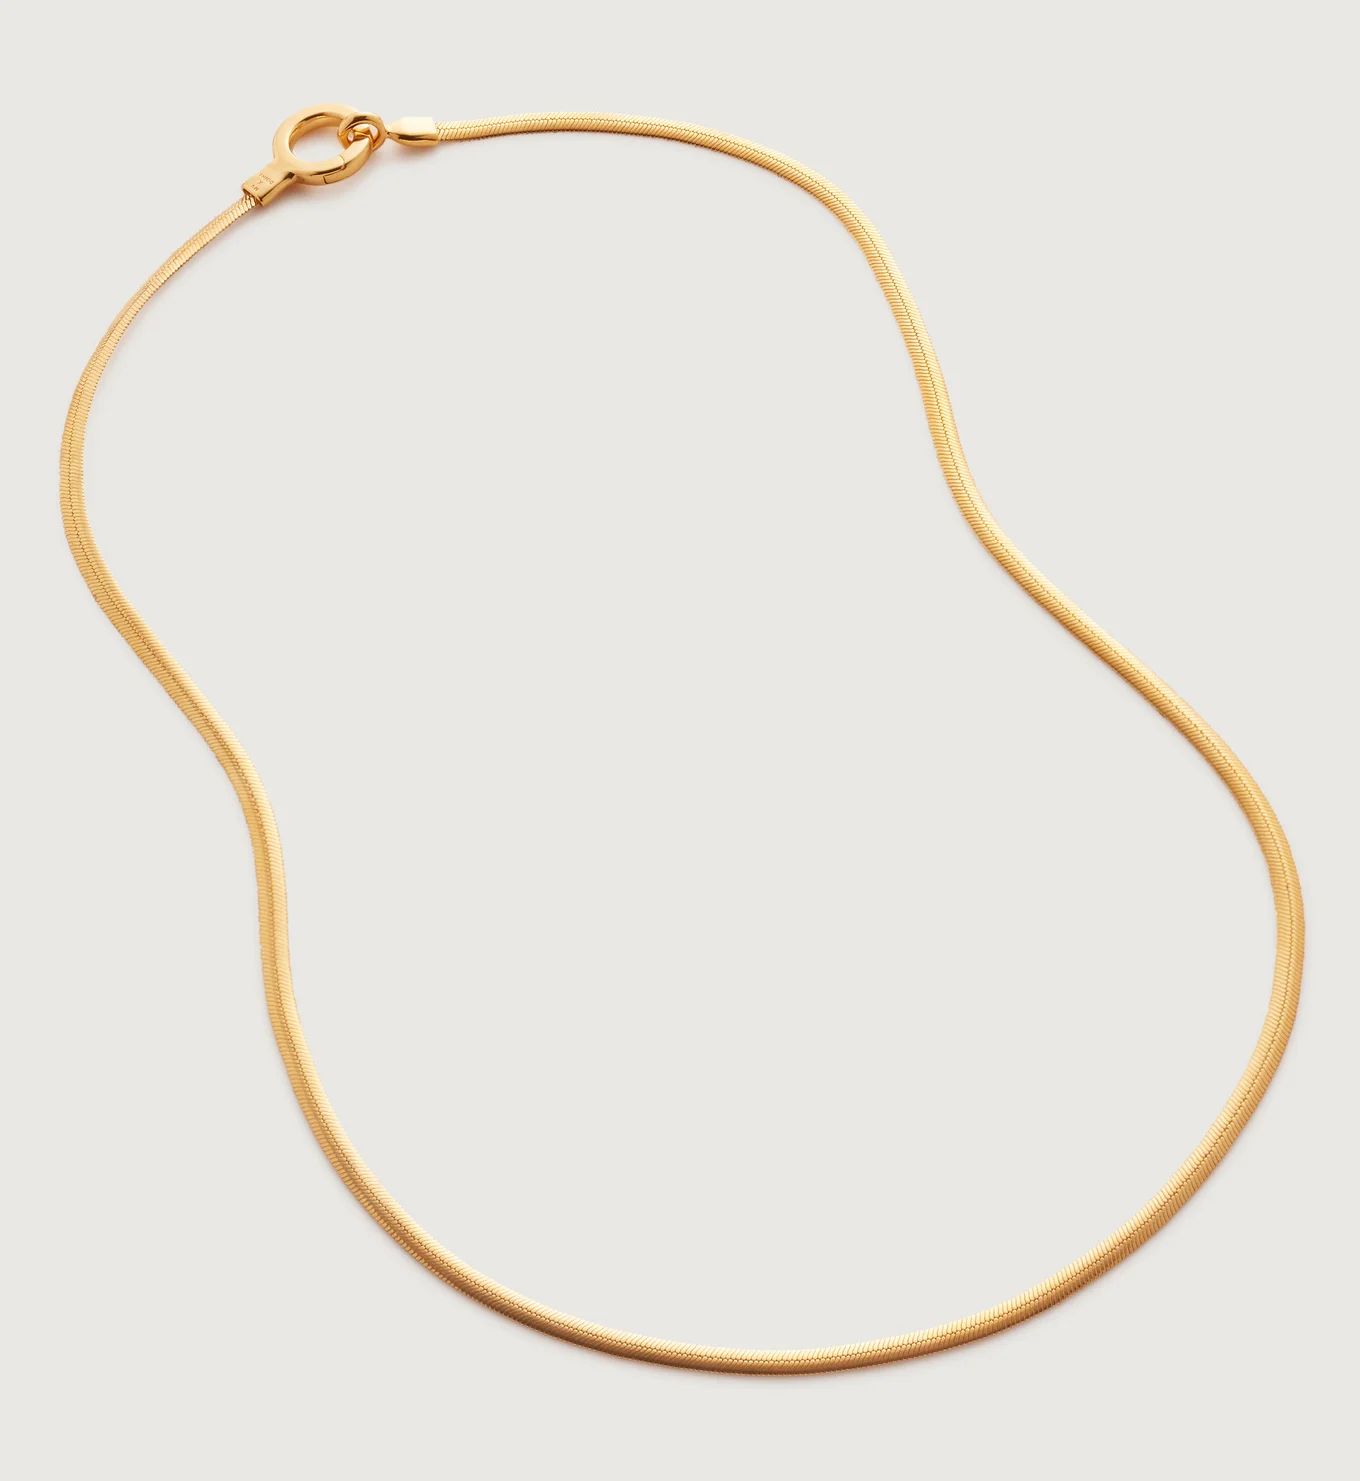 Doina Snake Chain Necklace 46cm/18" | Monica Vinader (US)